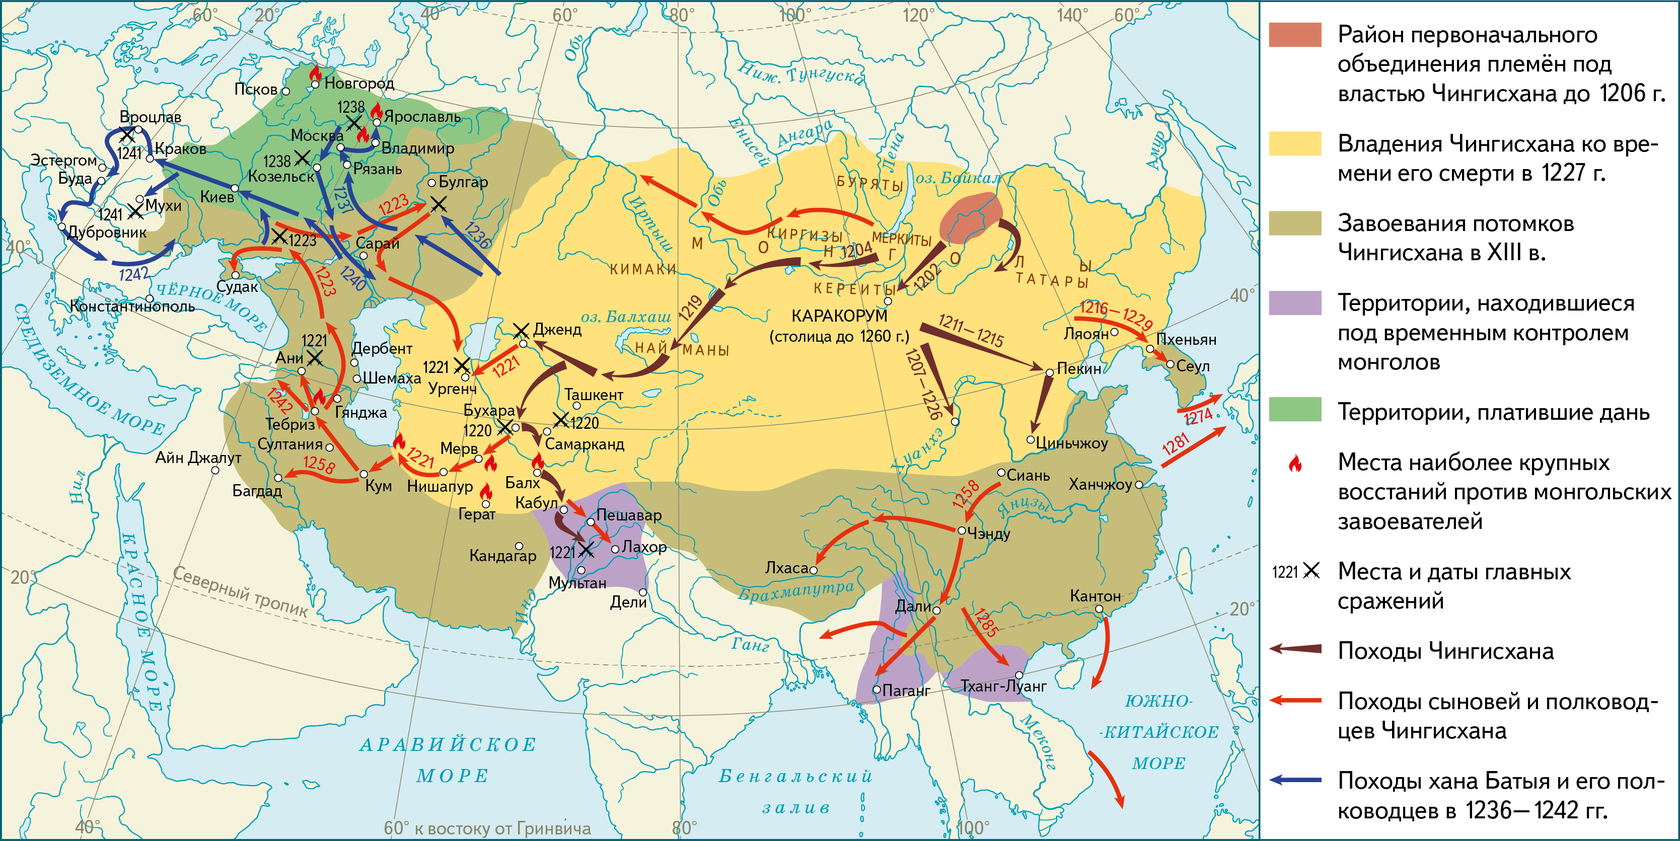 Власть в великом хане. Завоевательные походы Чингисхана карта. Монгольская Империя 12 век. Монгольская Империя Чингисхана карта. Монгольские завоевания Чингисхана на карте.